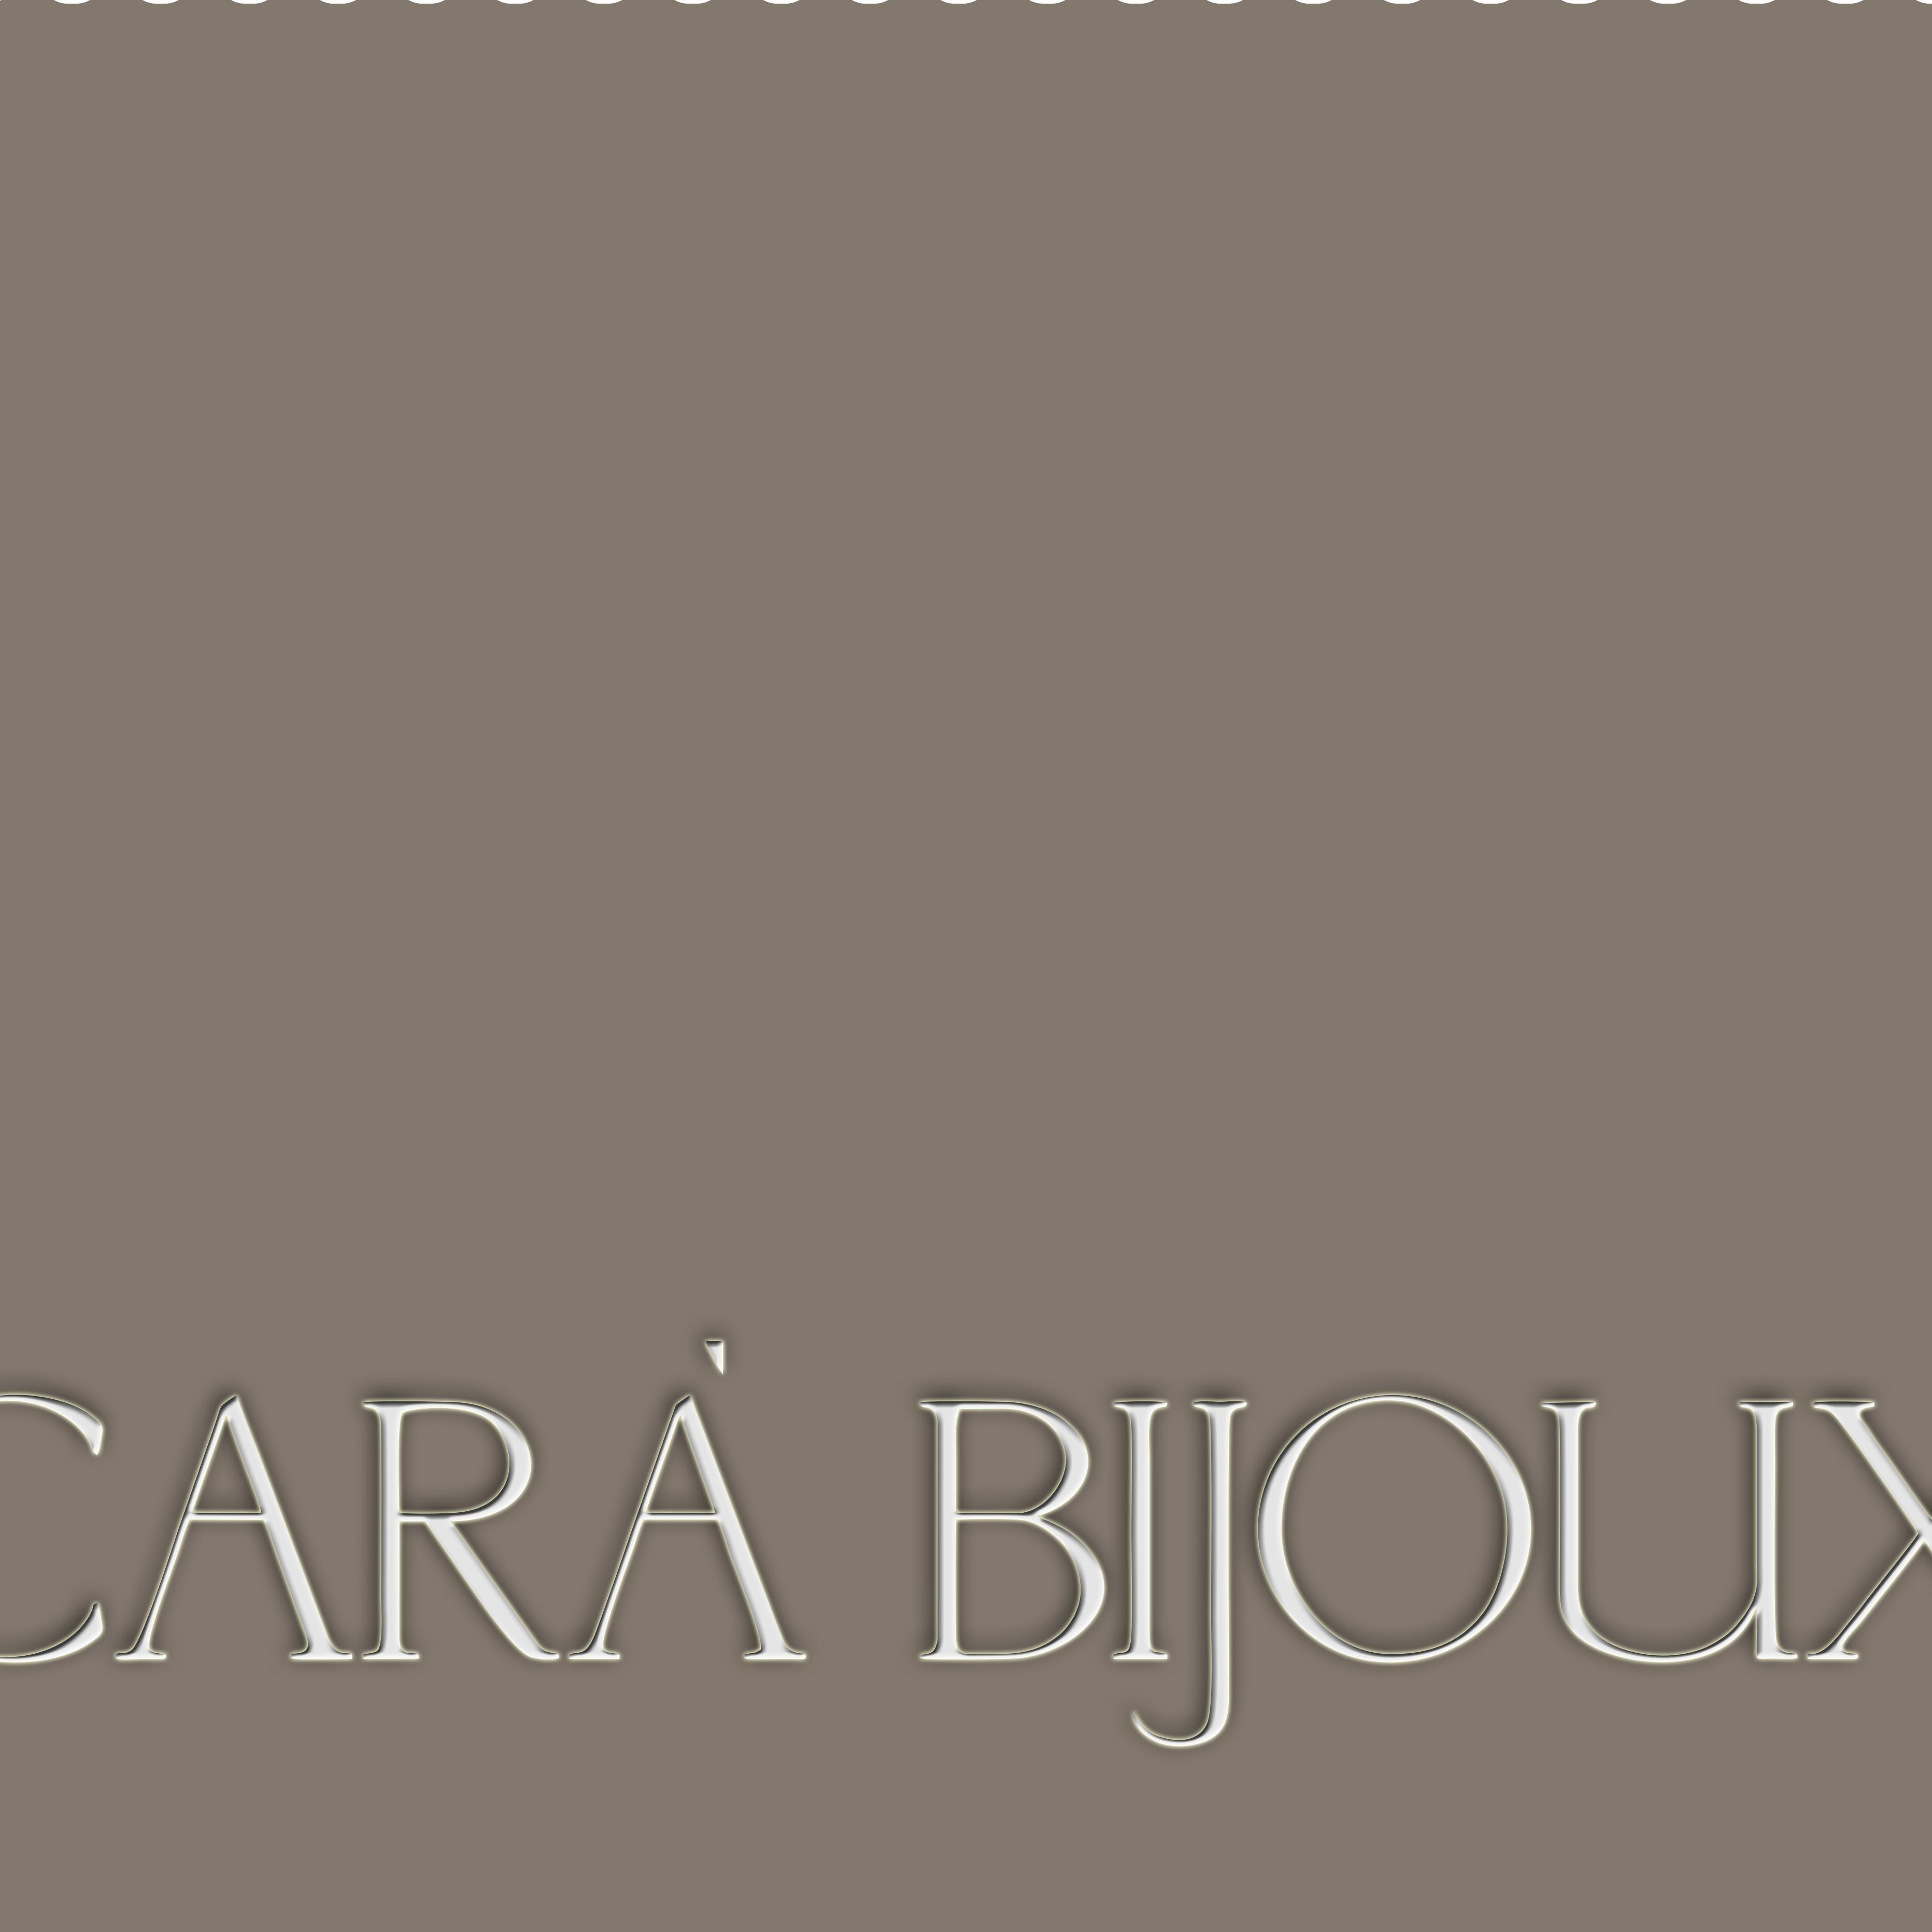 Carà Bijoux crea e realizza nei propri laboratori prestigiosi oggetti di alta qualità e design.